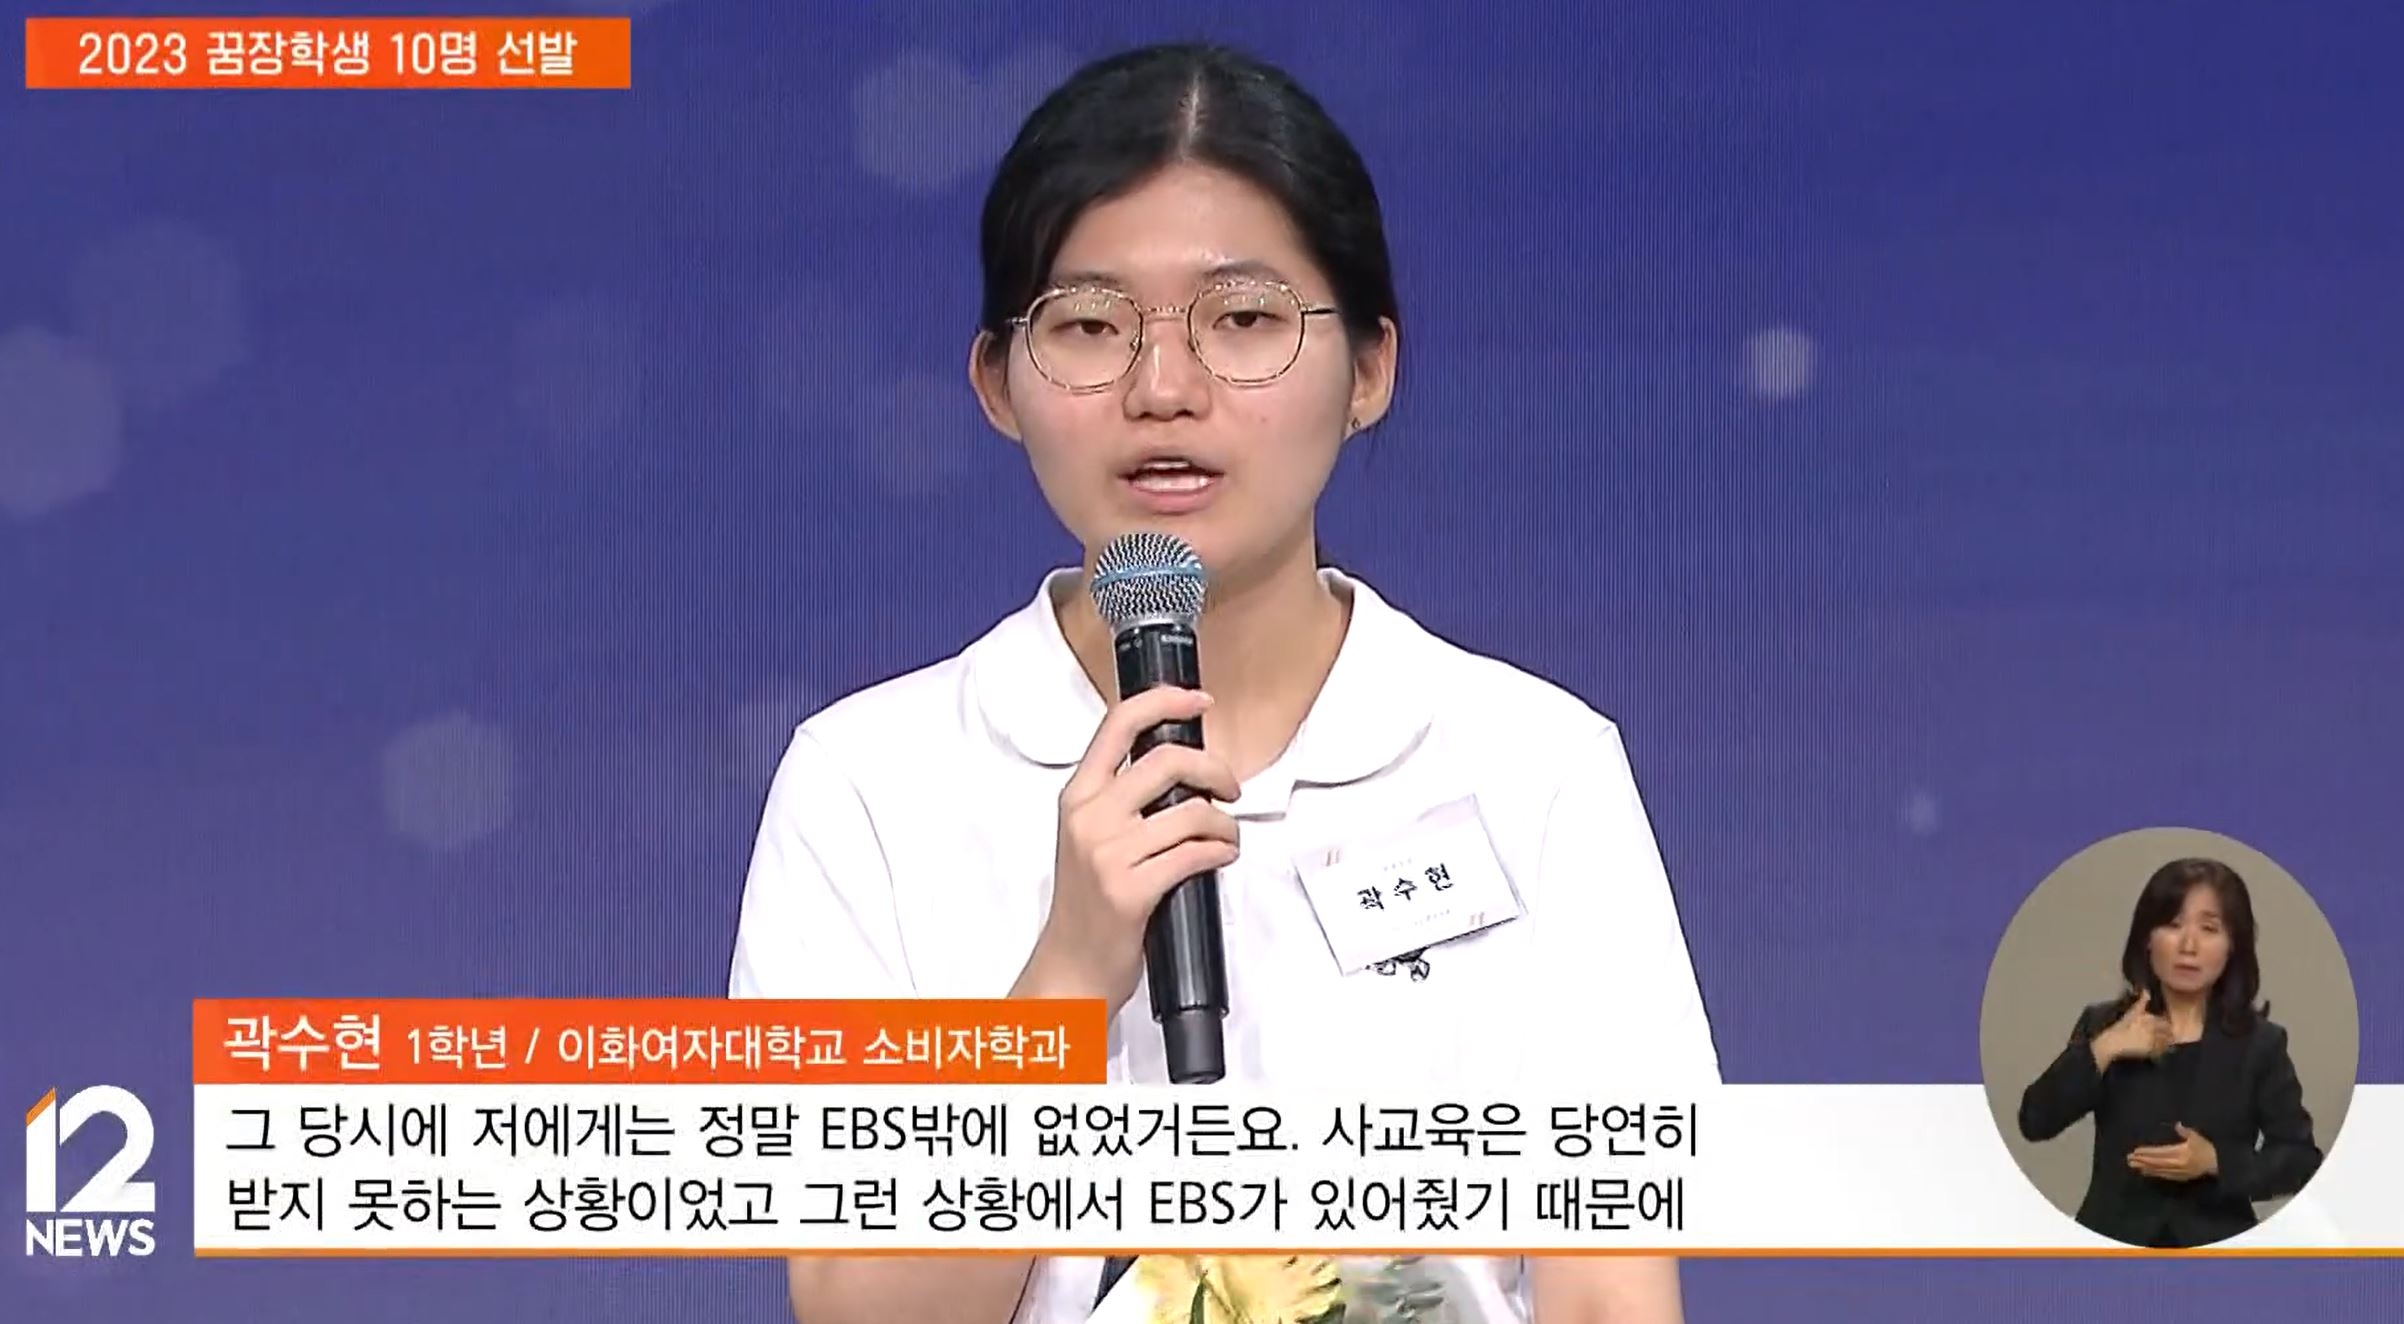 이화여대에 합격한 곽수현씨. 유튜브 ‘EBS 뉴스’